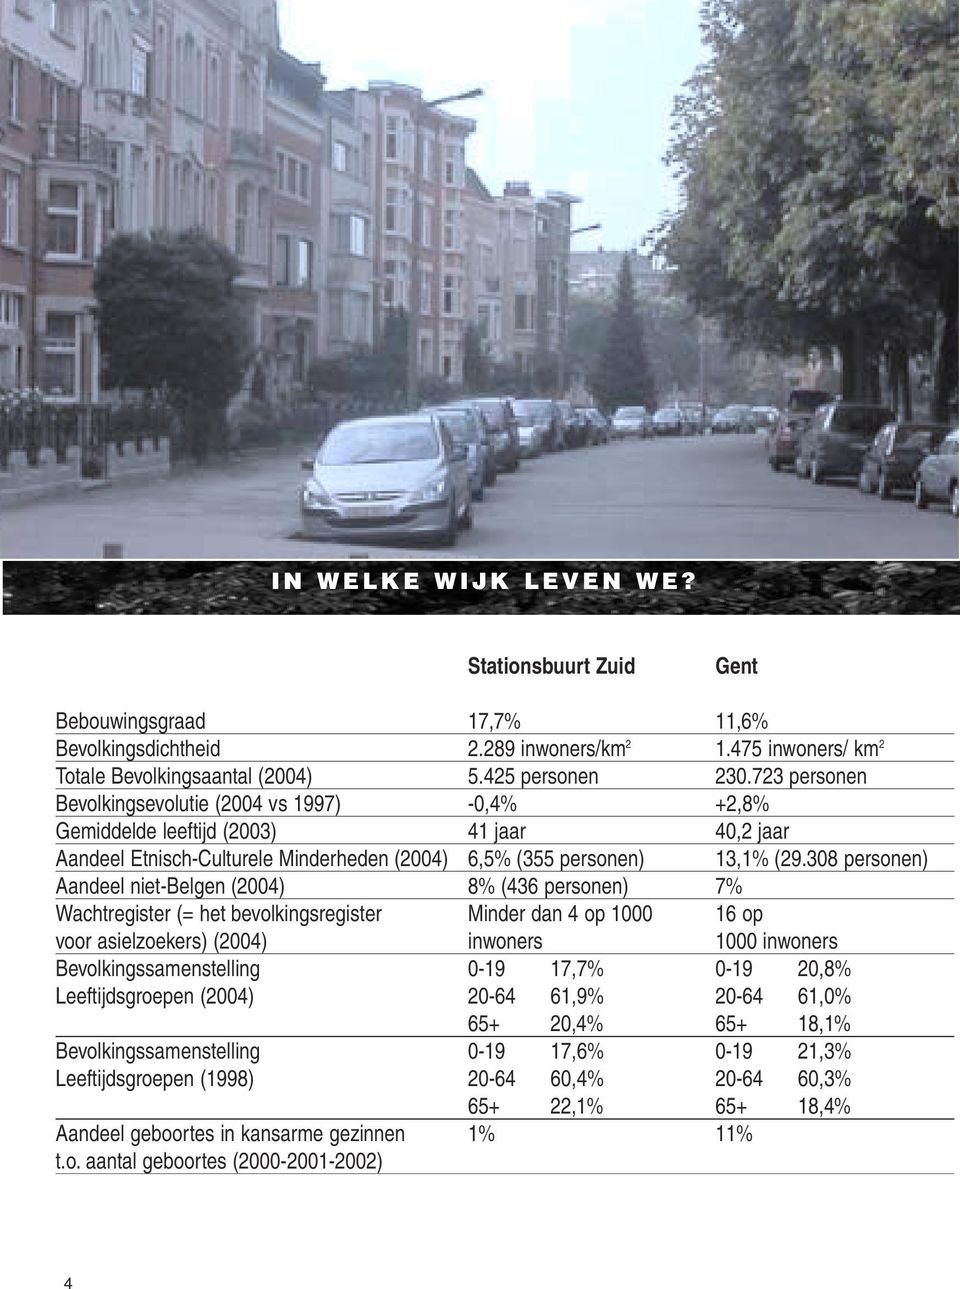 308 personen) Aandeel niet-belgen (2004) 8% (436 personen) 7% Wachtregister (= het bevolkingsregister Minder dan 4 op 1000 16 op voor asielzoekers) (2004) inwoners 1000 inwoners